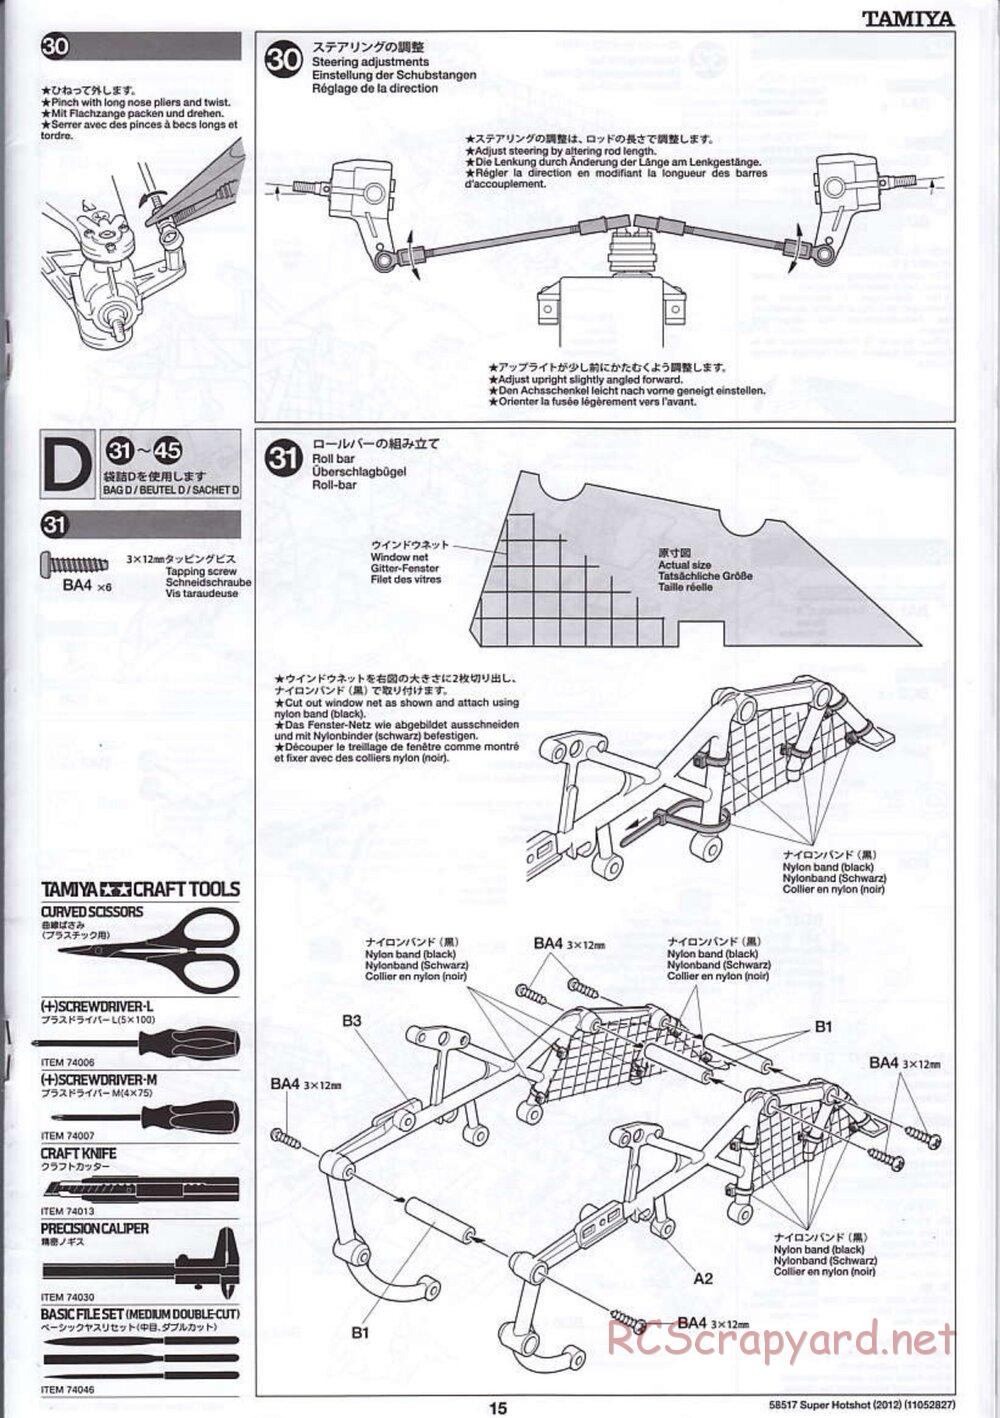 Tamiya - Super Hotshot 2012 - HS Chassis - Manual - Page 15